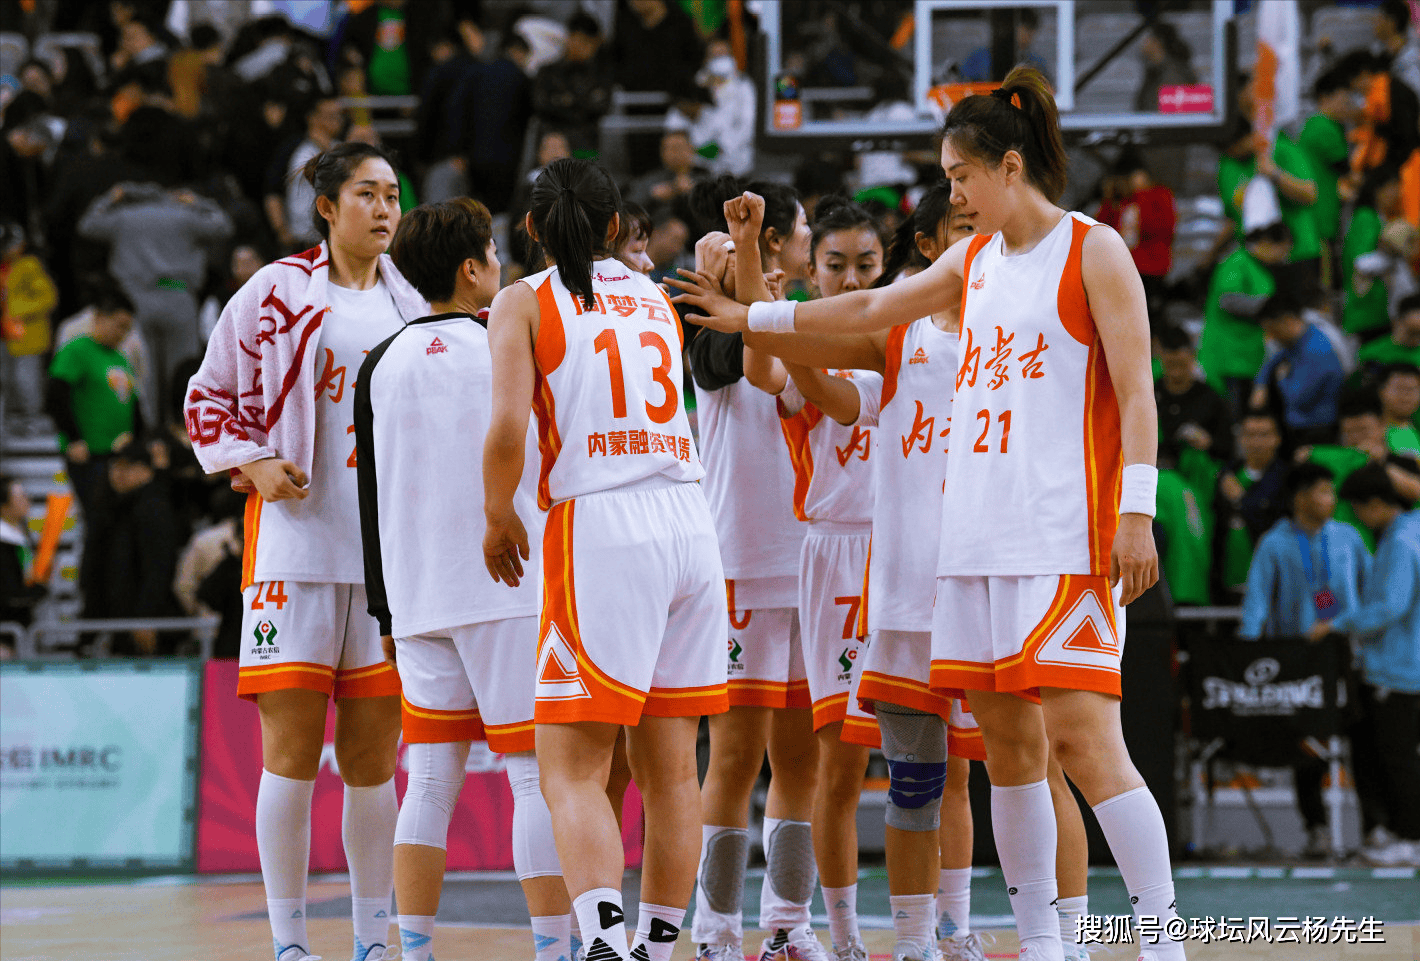 【168sports】谁将问鼎冠军？内蒙古女篮与四川女篮的终极对决即将上演。